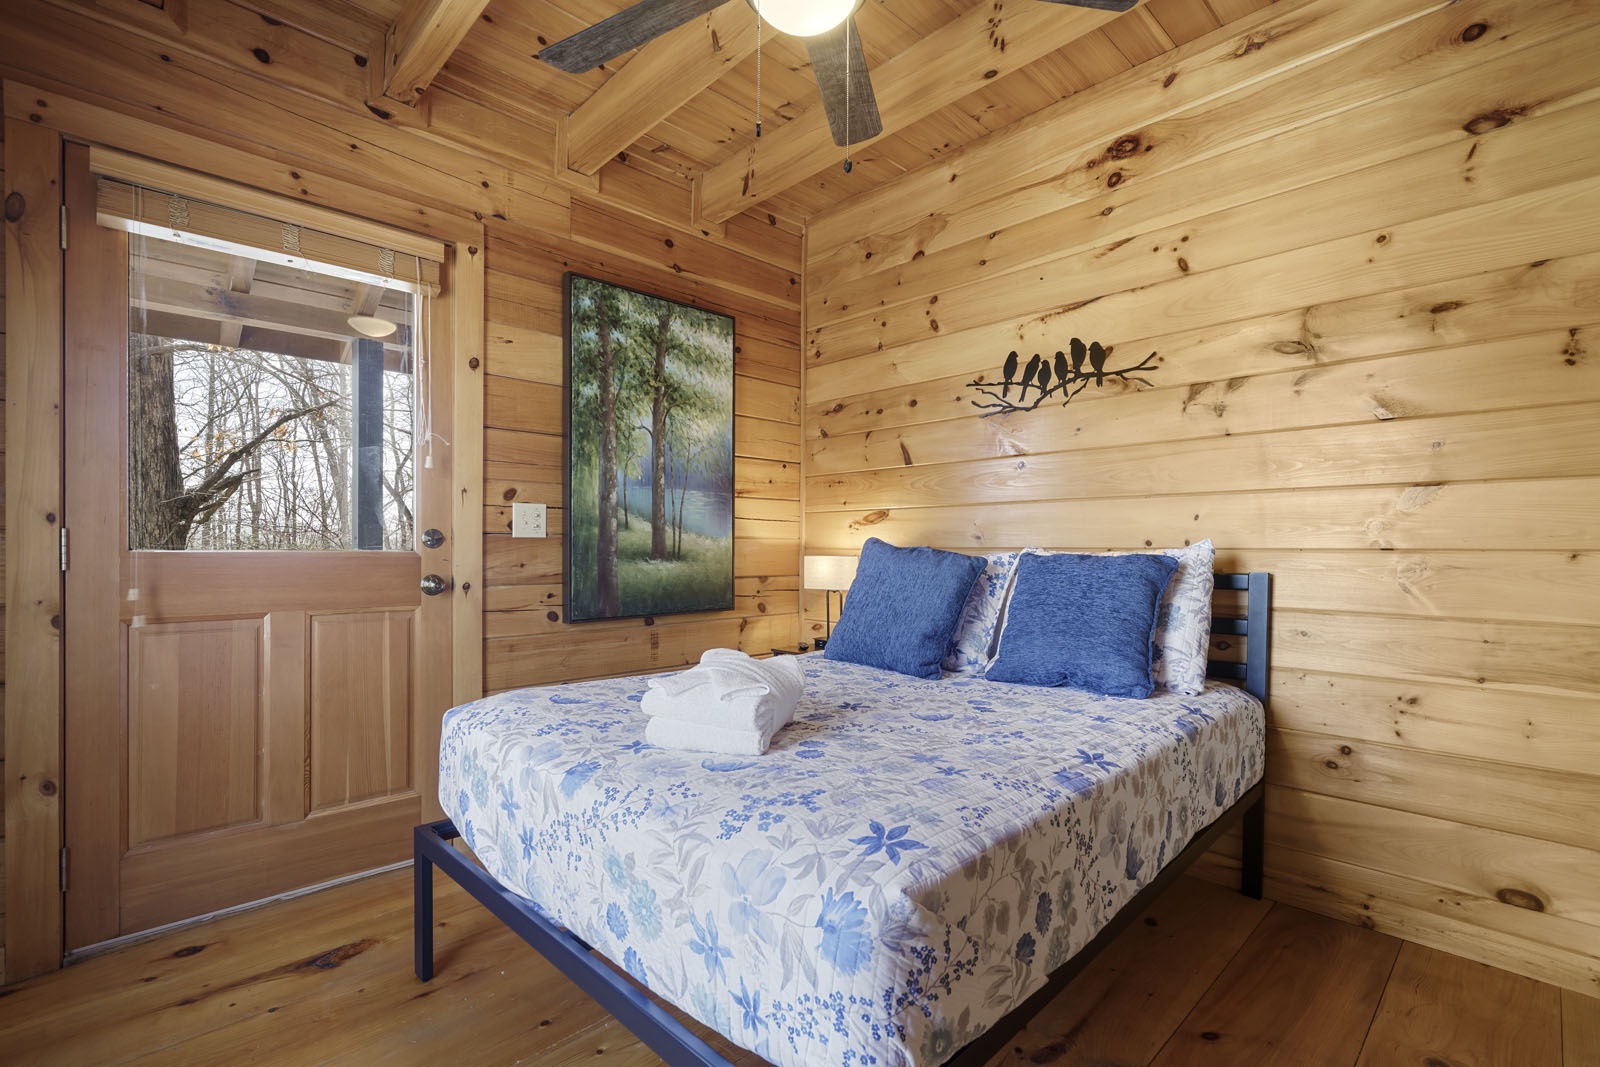 Lake Ridge - Entry Level Queen Bedroom